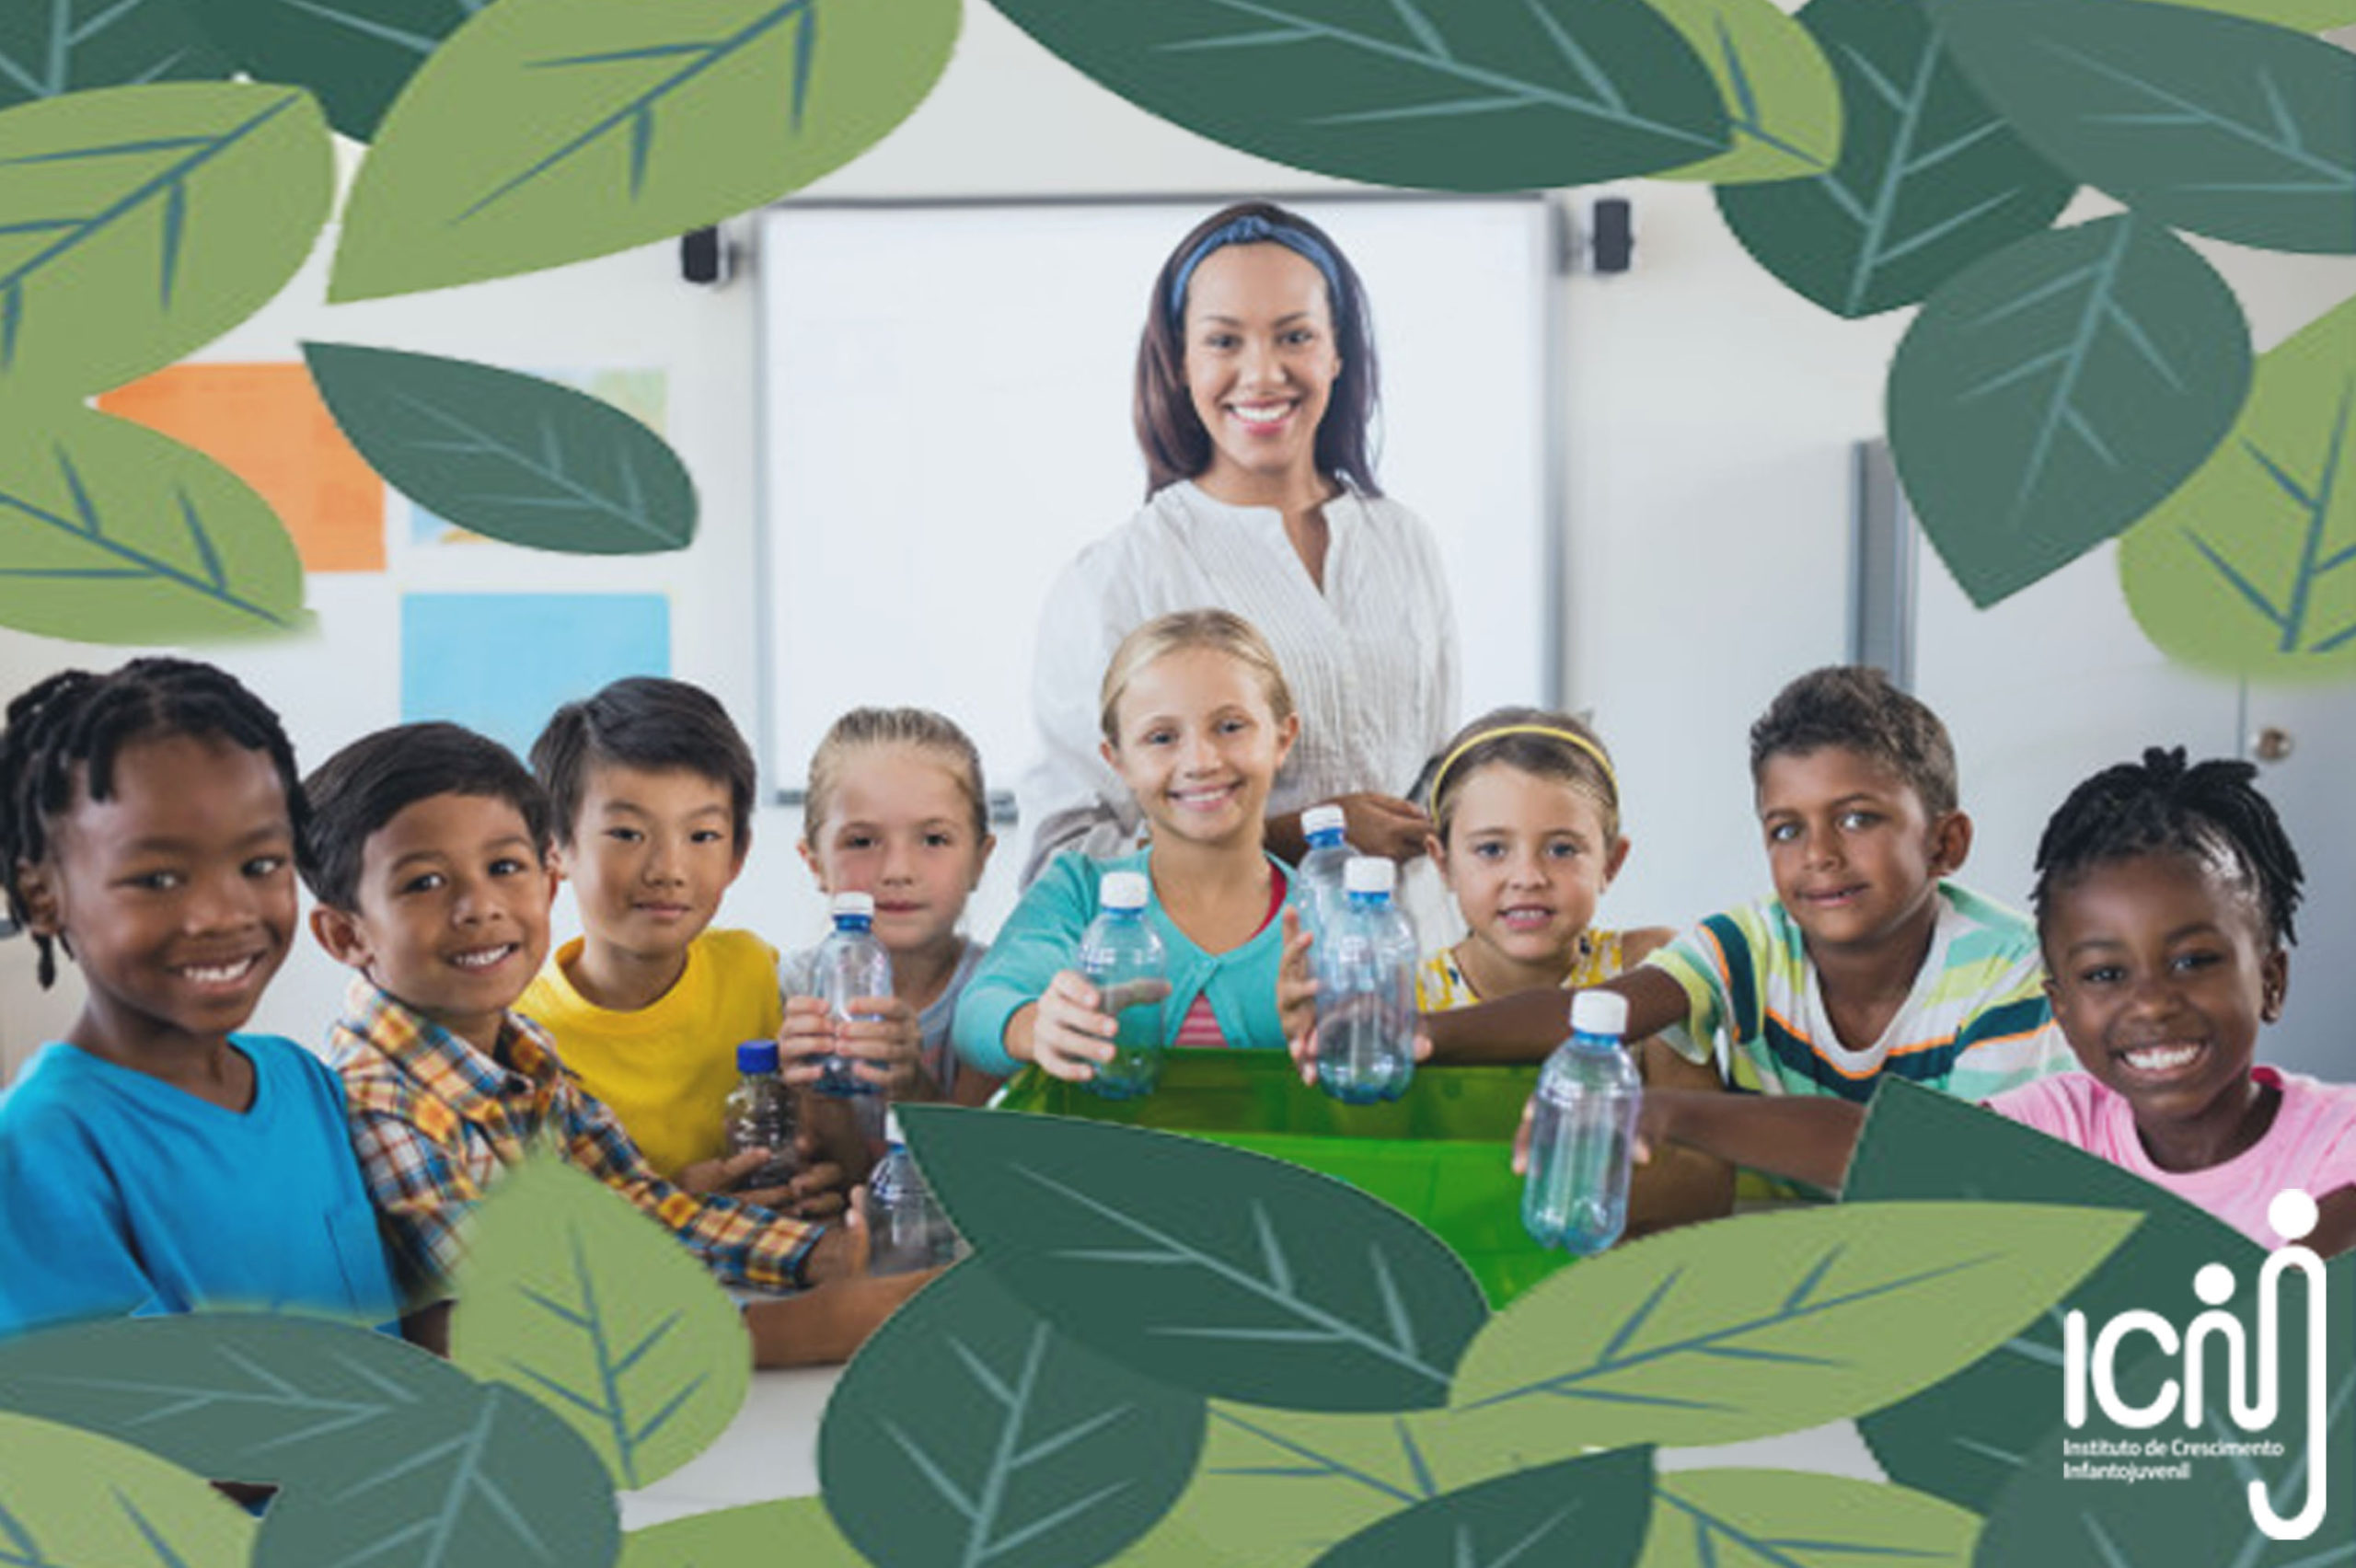 Seis dicas para ensinar sustentabilidade na escola